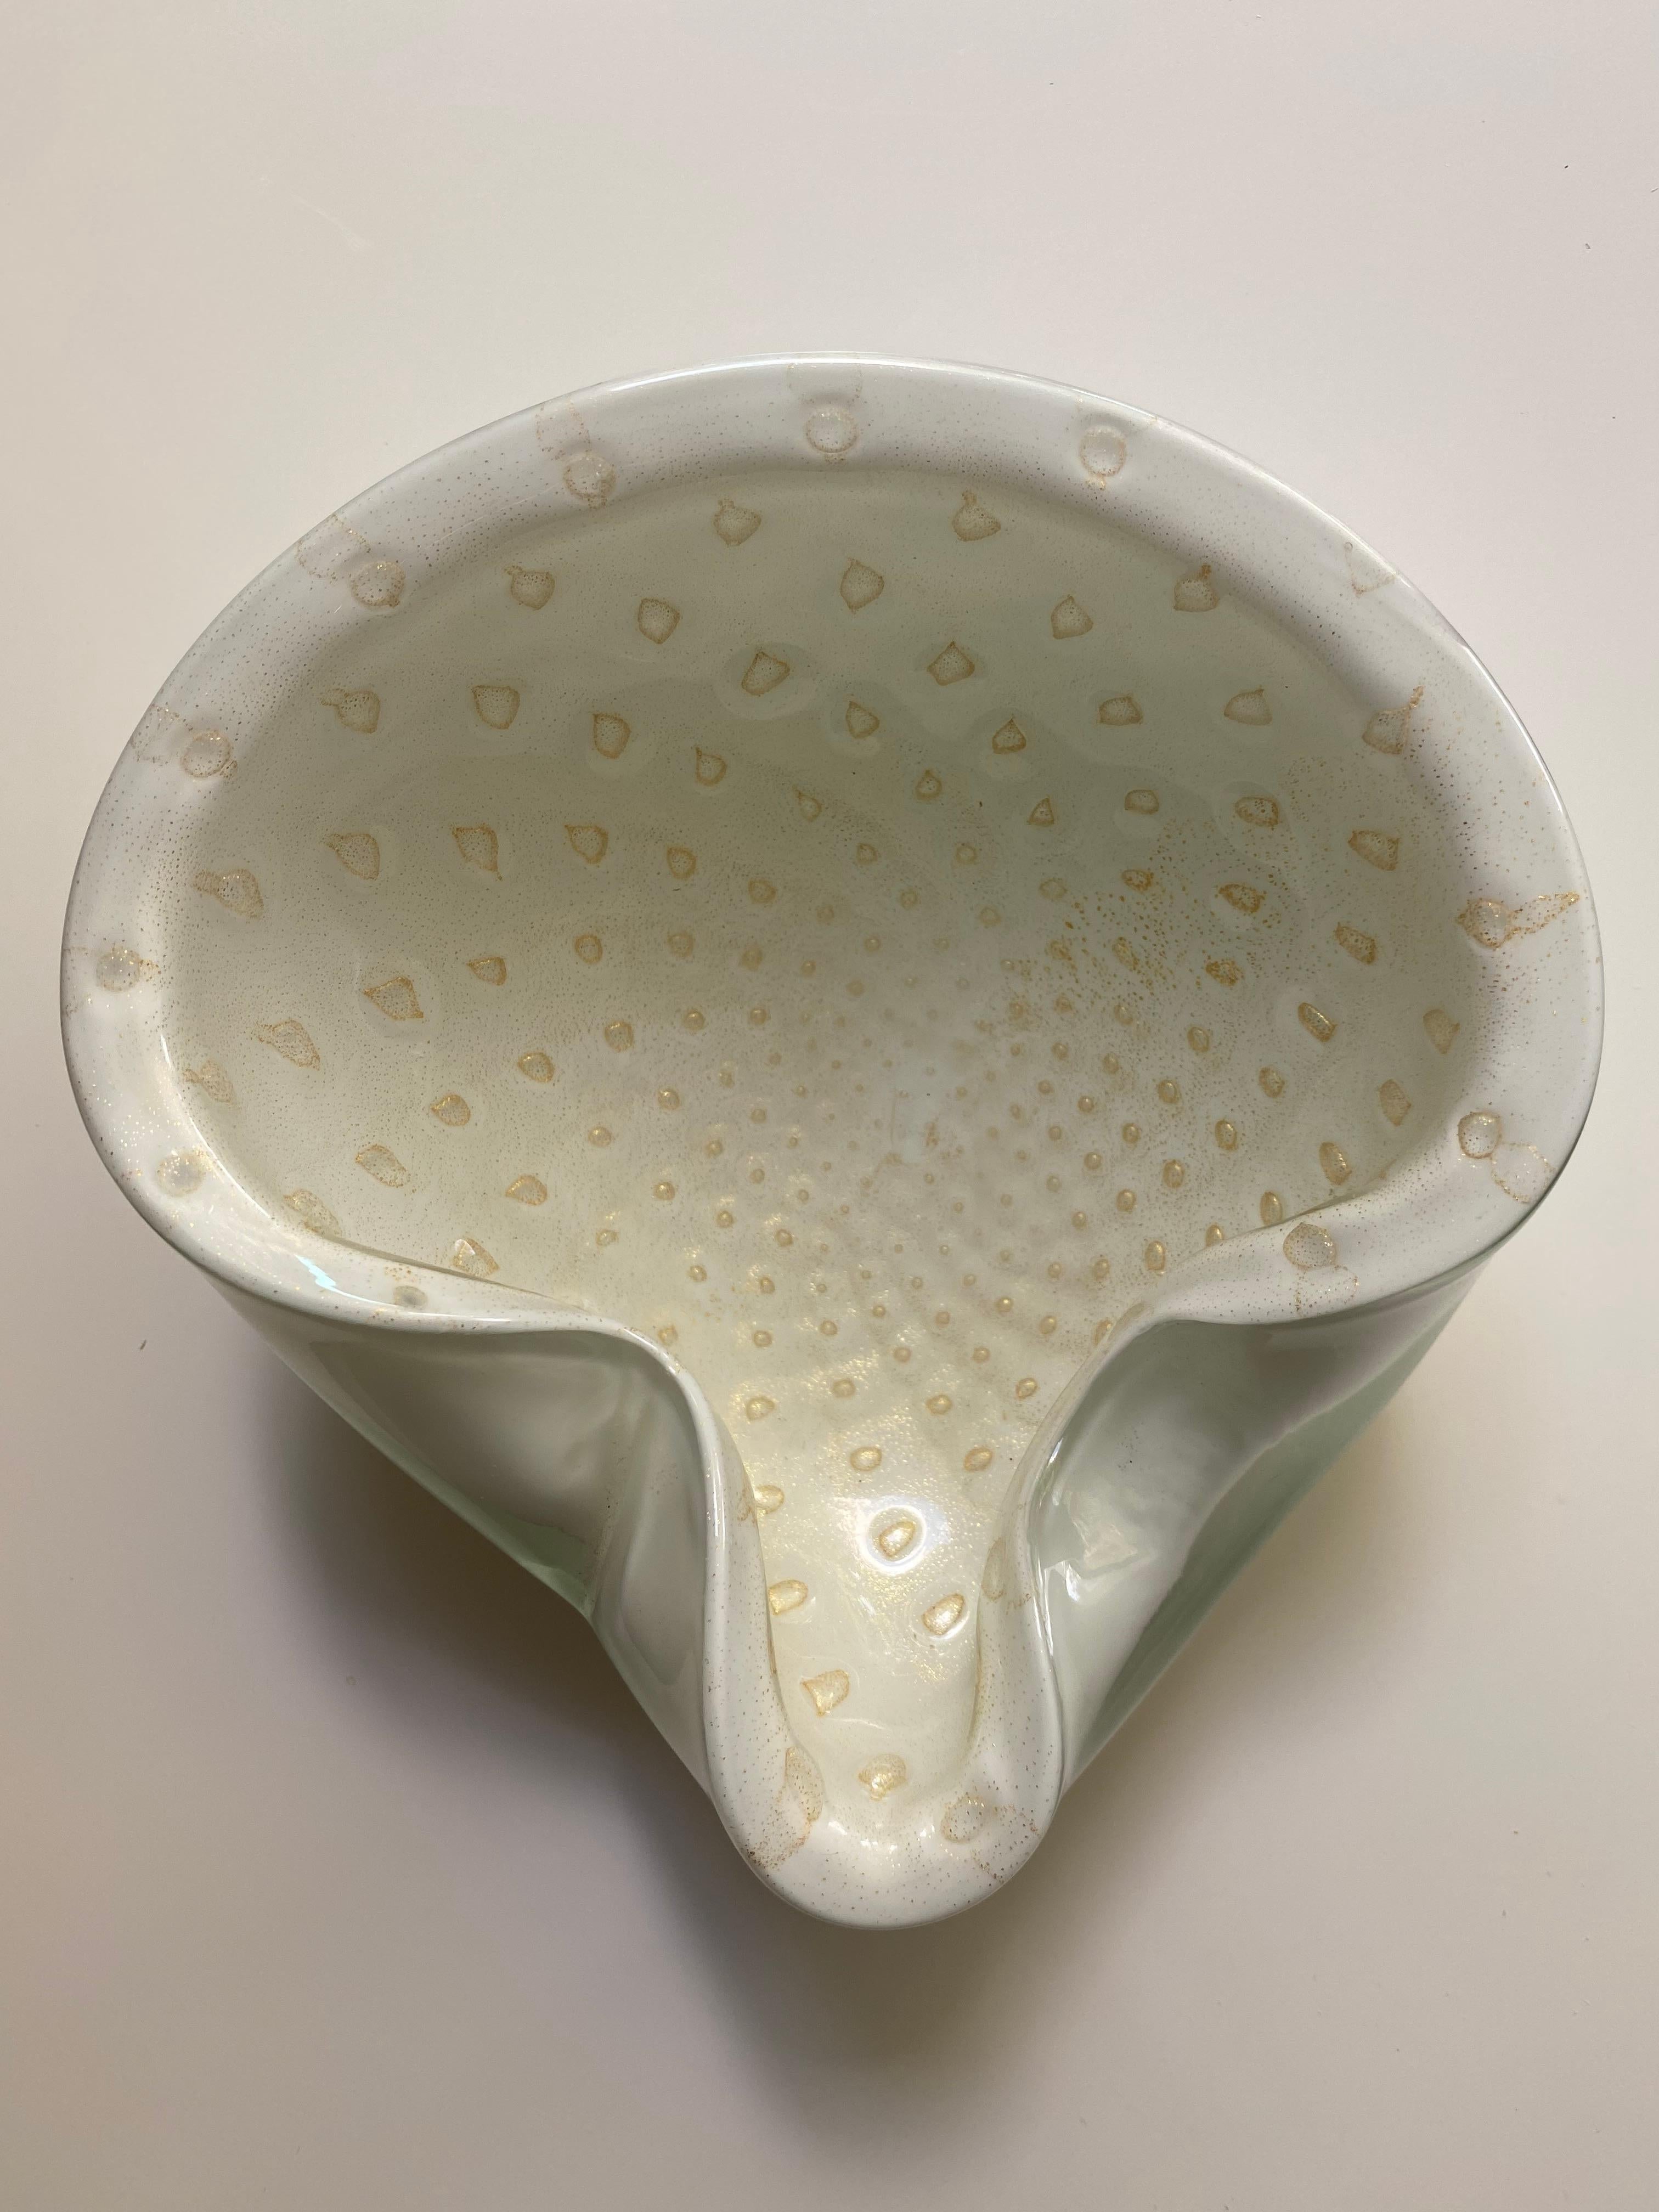 Magnifique bol en verre soufflé à la main de Murano avec des mouchetures d'or. Design/One, vers 1950-1960. Peut être utilisé comme pièce d'exposition sur une table ou une étagère.